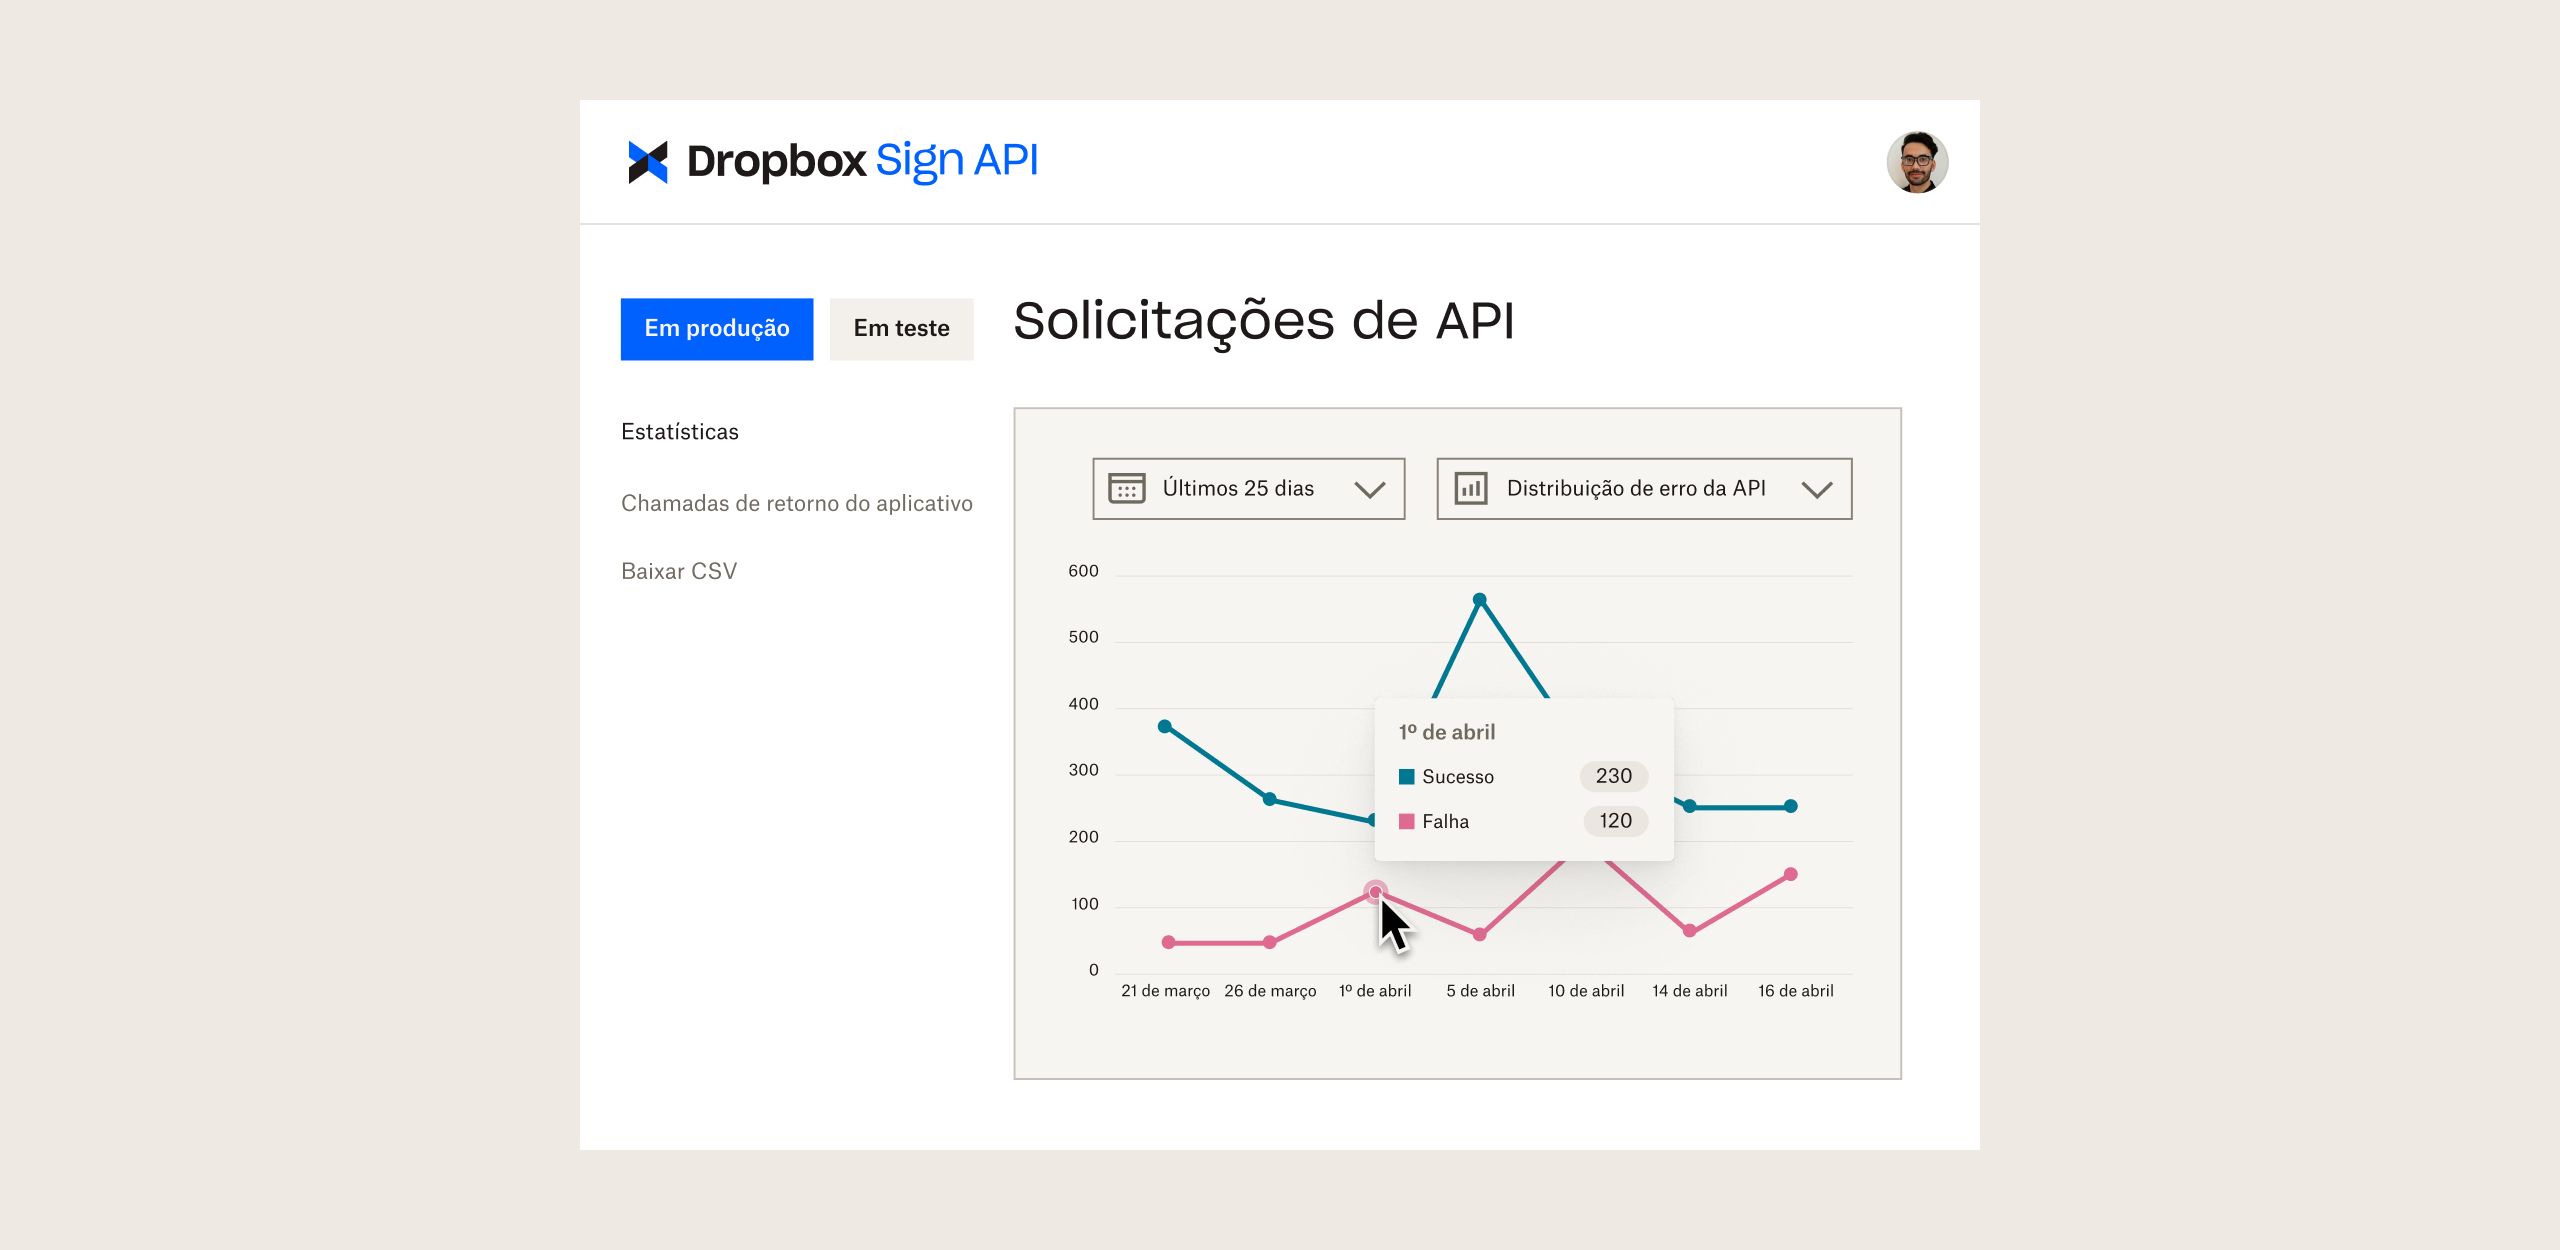 Painel da Dropbox Sign API com gráficos mostrando solicitações da API ao longo do tempo